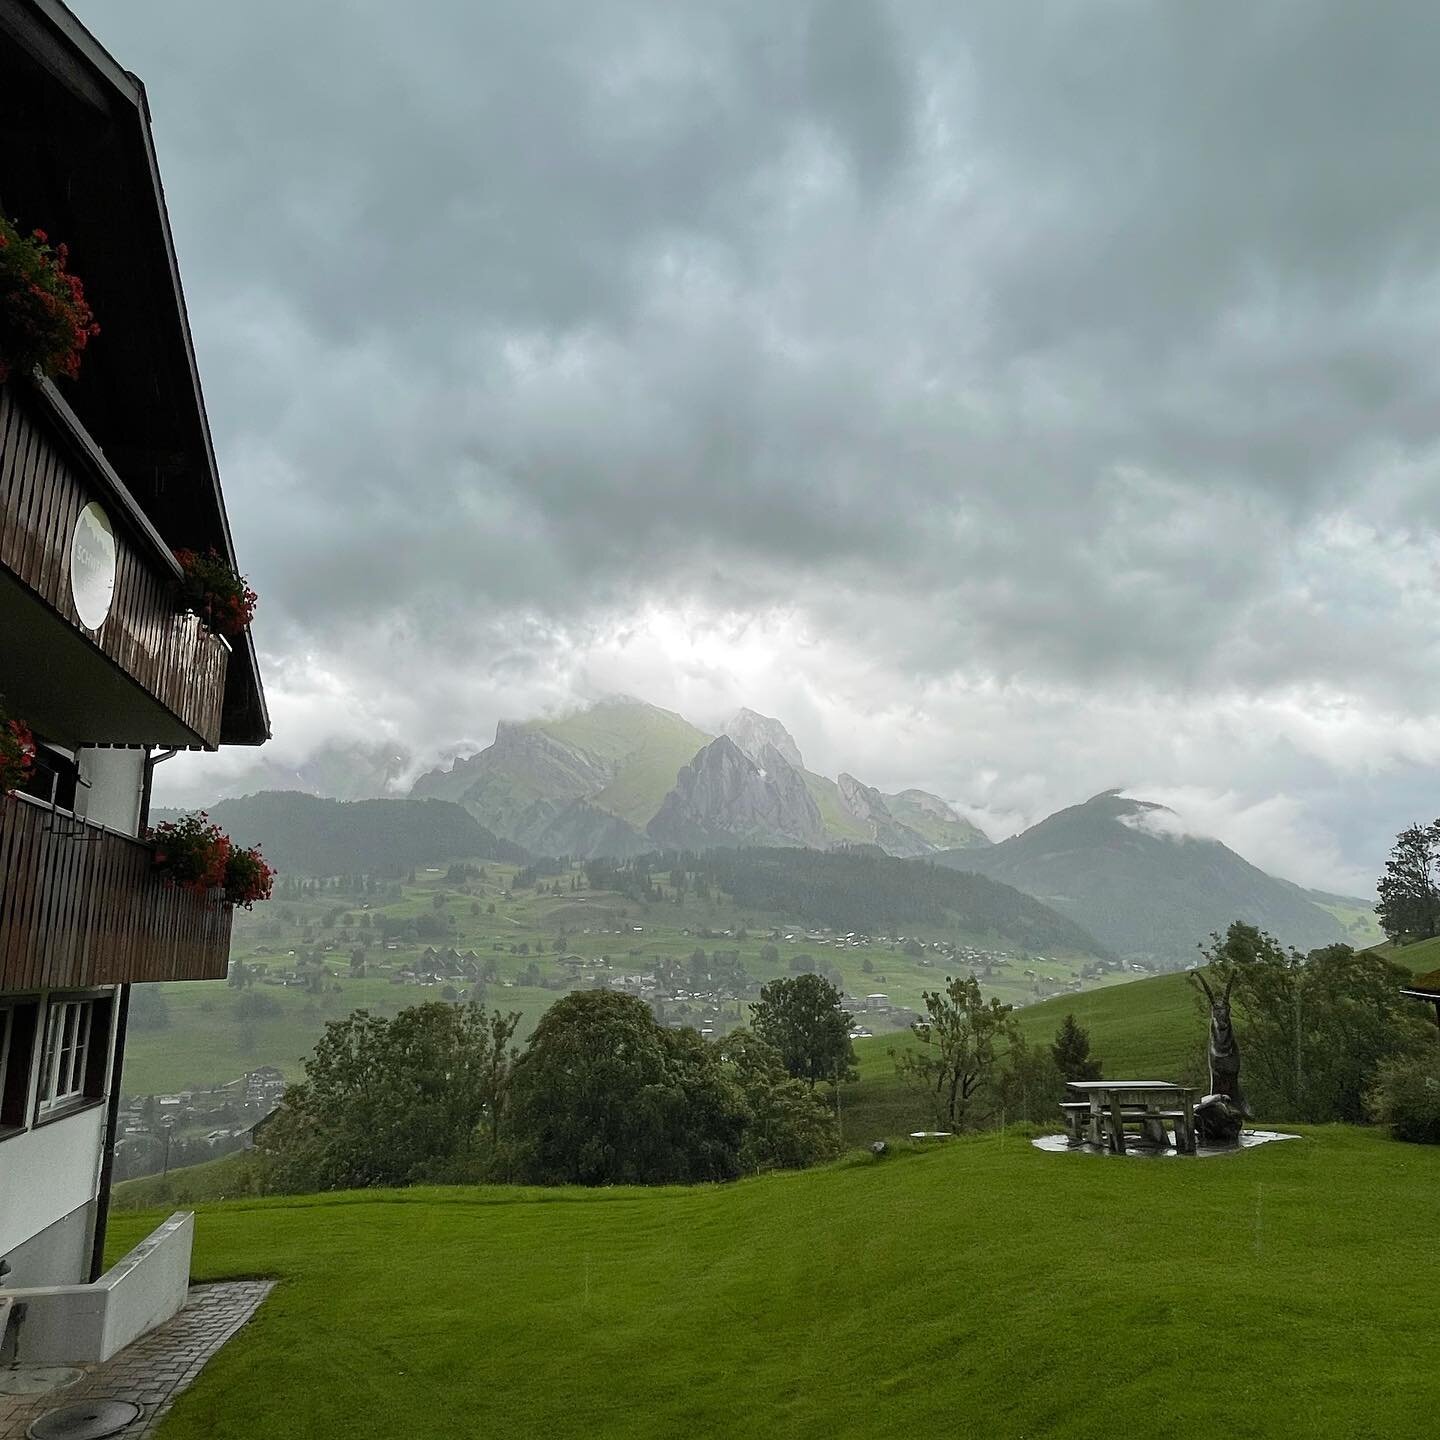 Mystische Stimmung in der Schwendi Lodge. Auch dieses Wetter hat seinen Reiz! 

#toggenburgtourismus #schwendilodge #wetter #sommeroderherbst #kurztripp